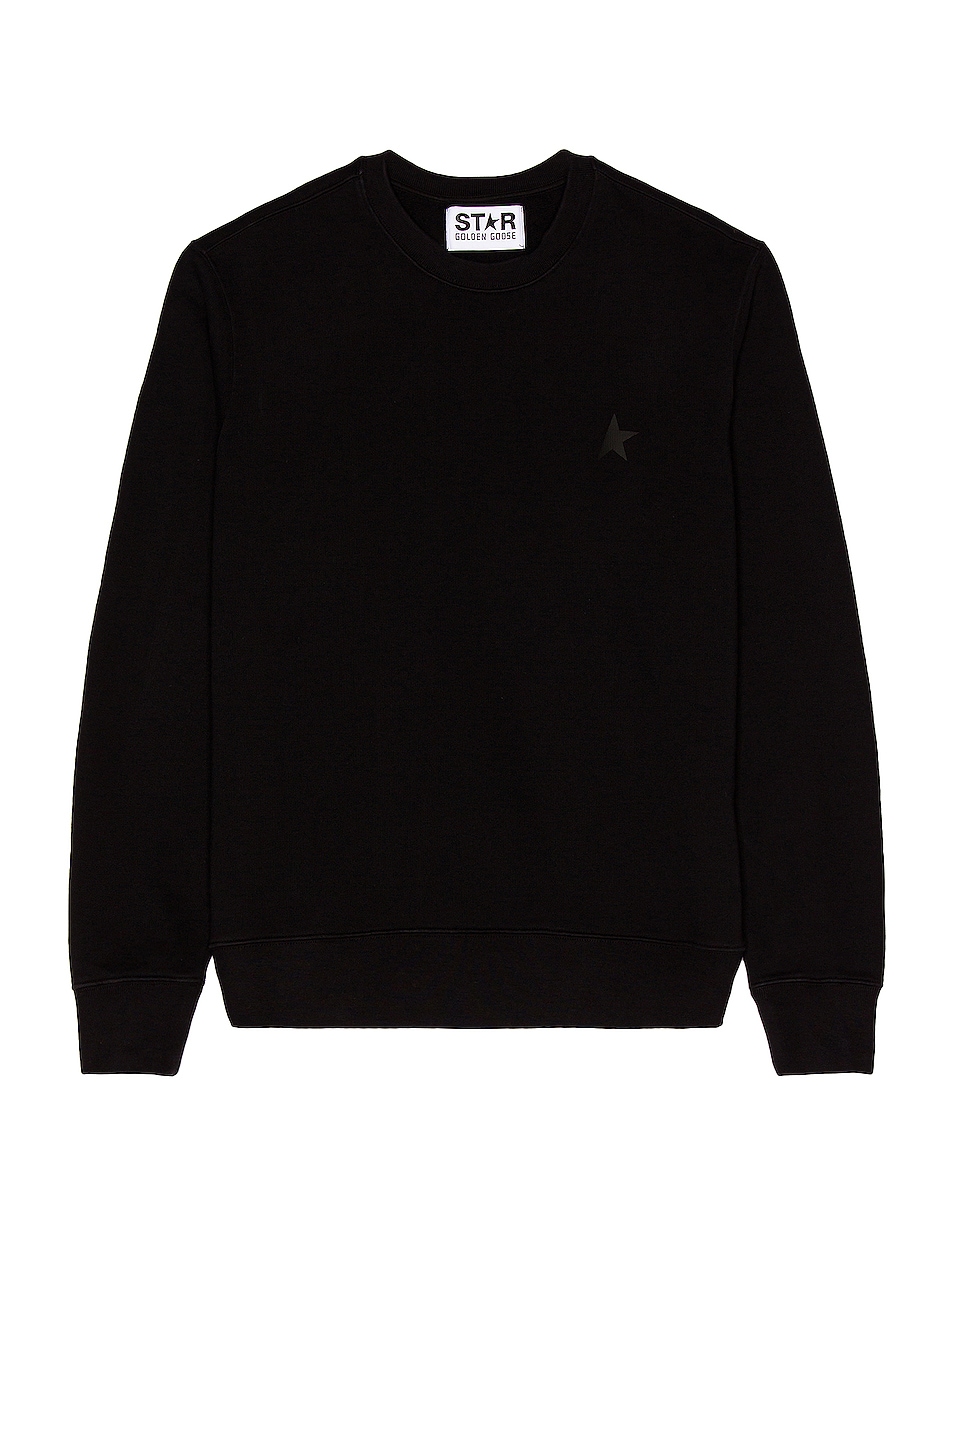 Image 1 of Golden Goose Star Sweatshirt in Black